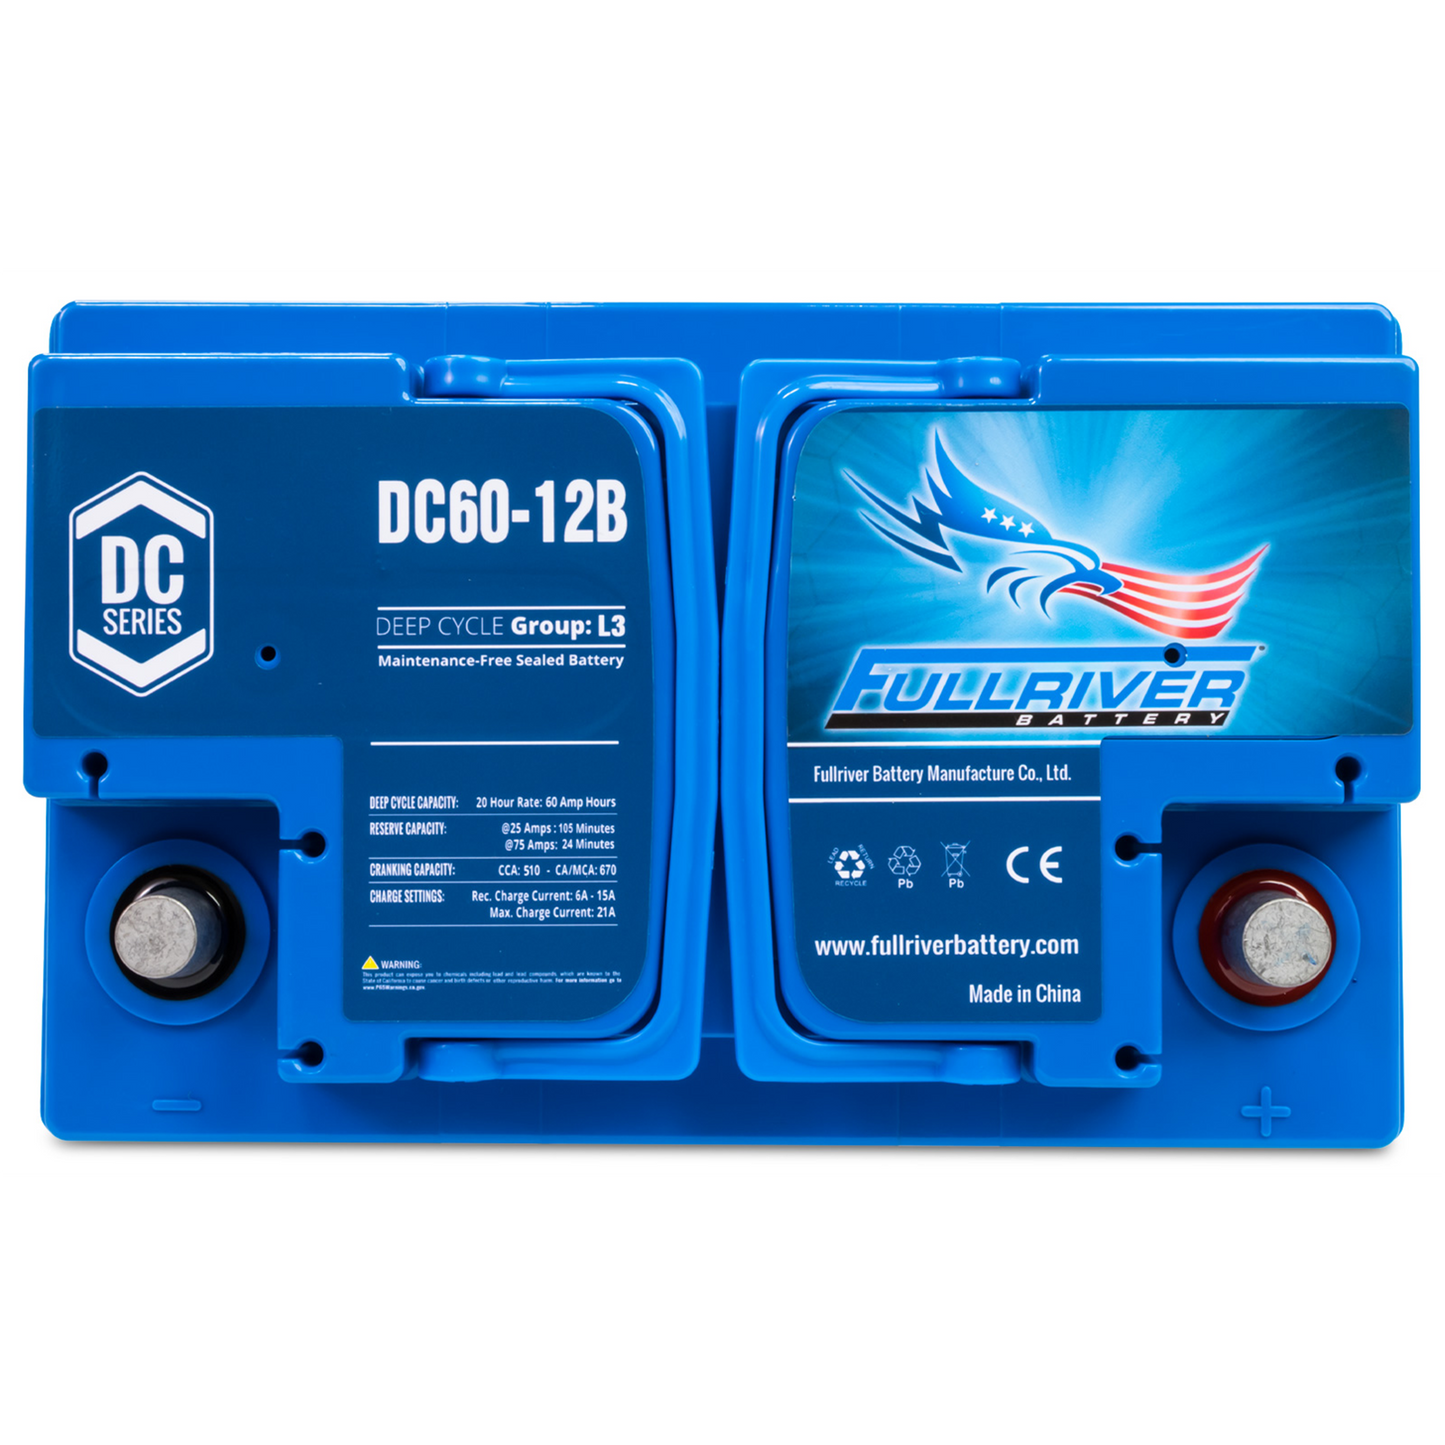 DC Series Battery 12V 60Ah (DC60-12B)